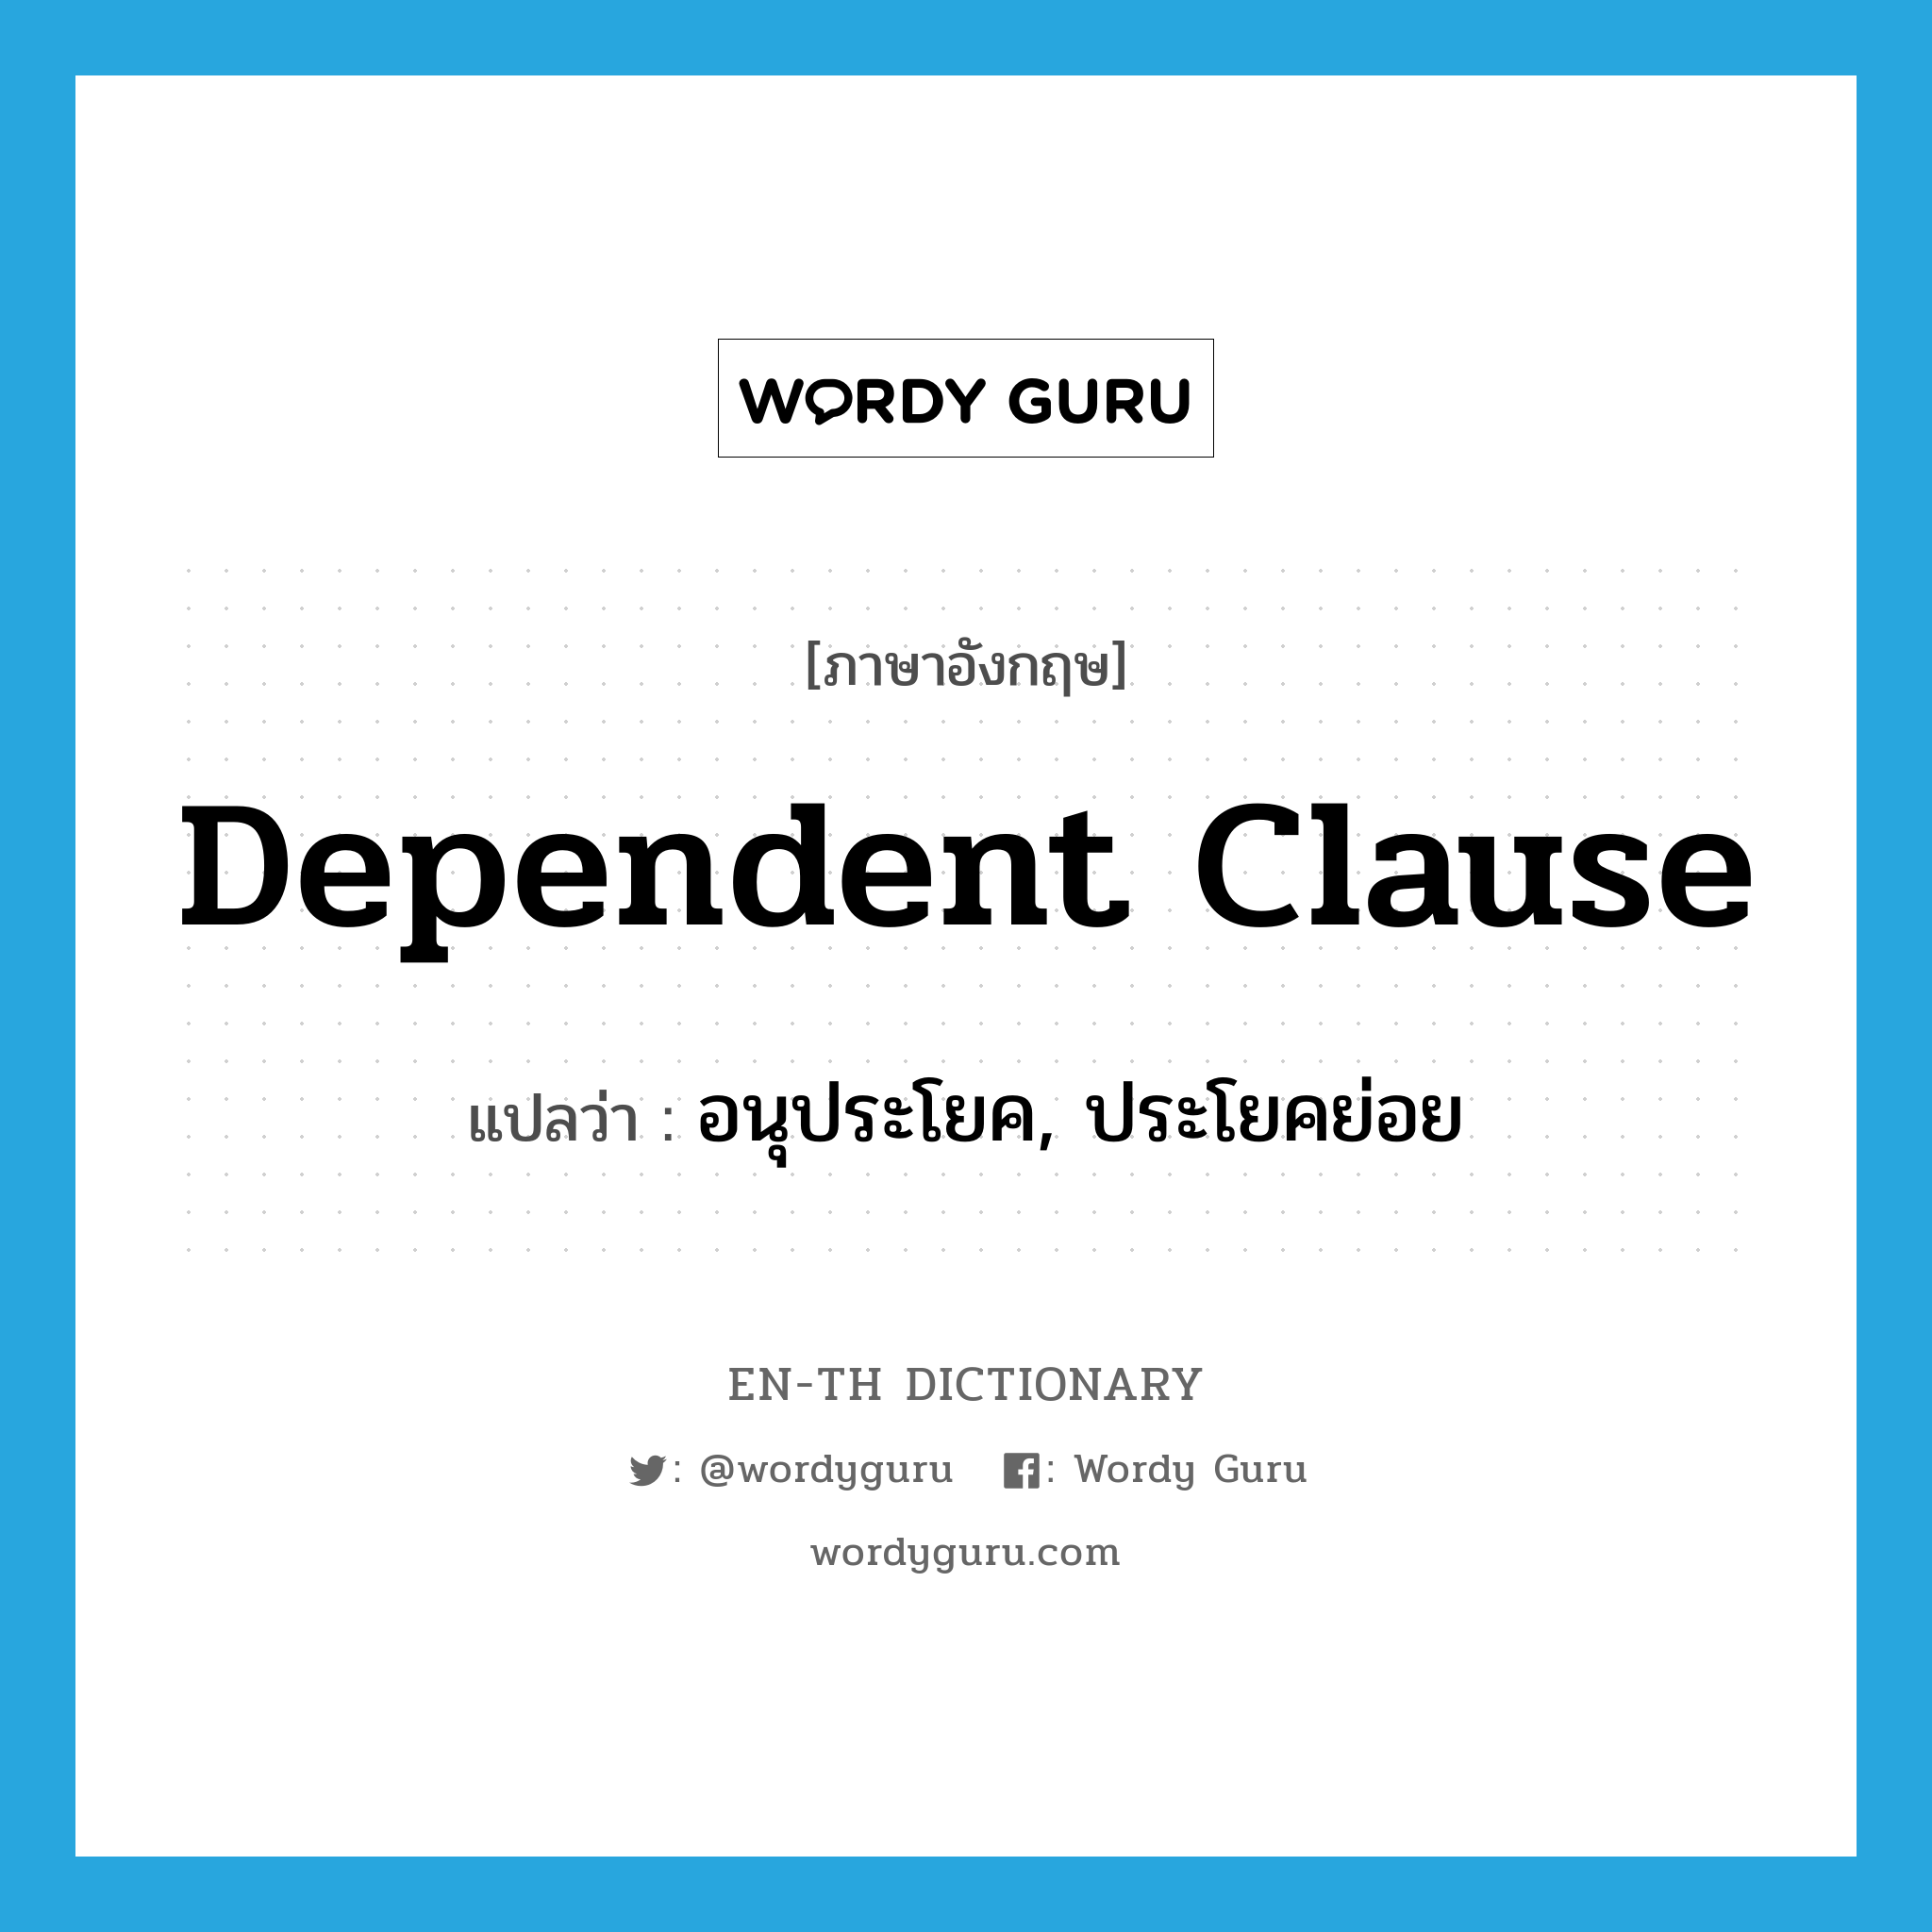 dependent clause แปลว่า?, คำศัพท์ภาษาอังกฤษ dependent clause แปลว่า อนุประโยค, ประโยคย่อย ประเภท N หมวด N